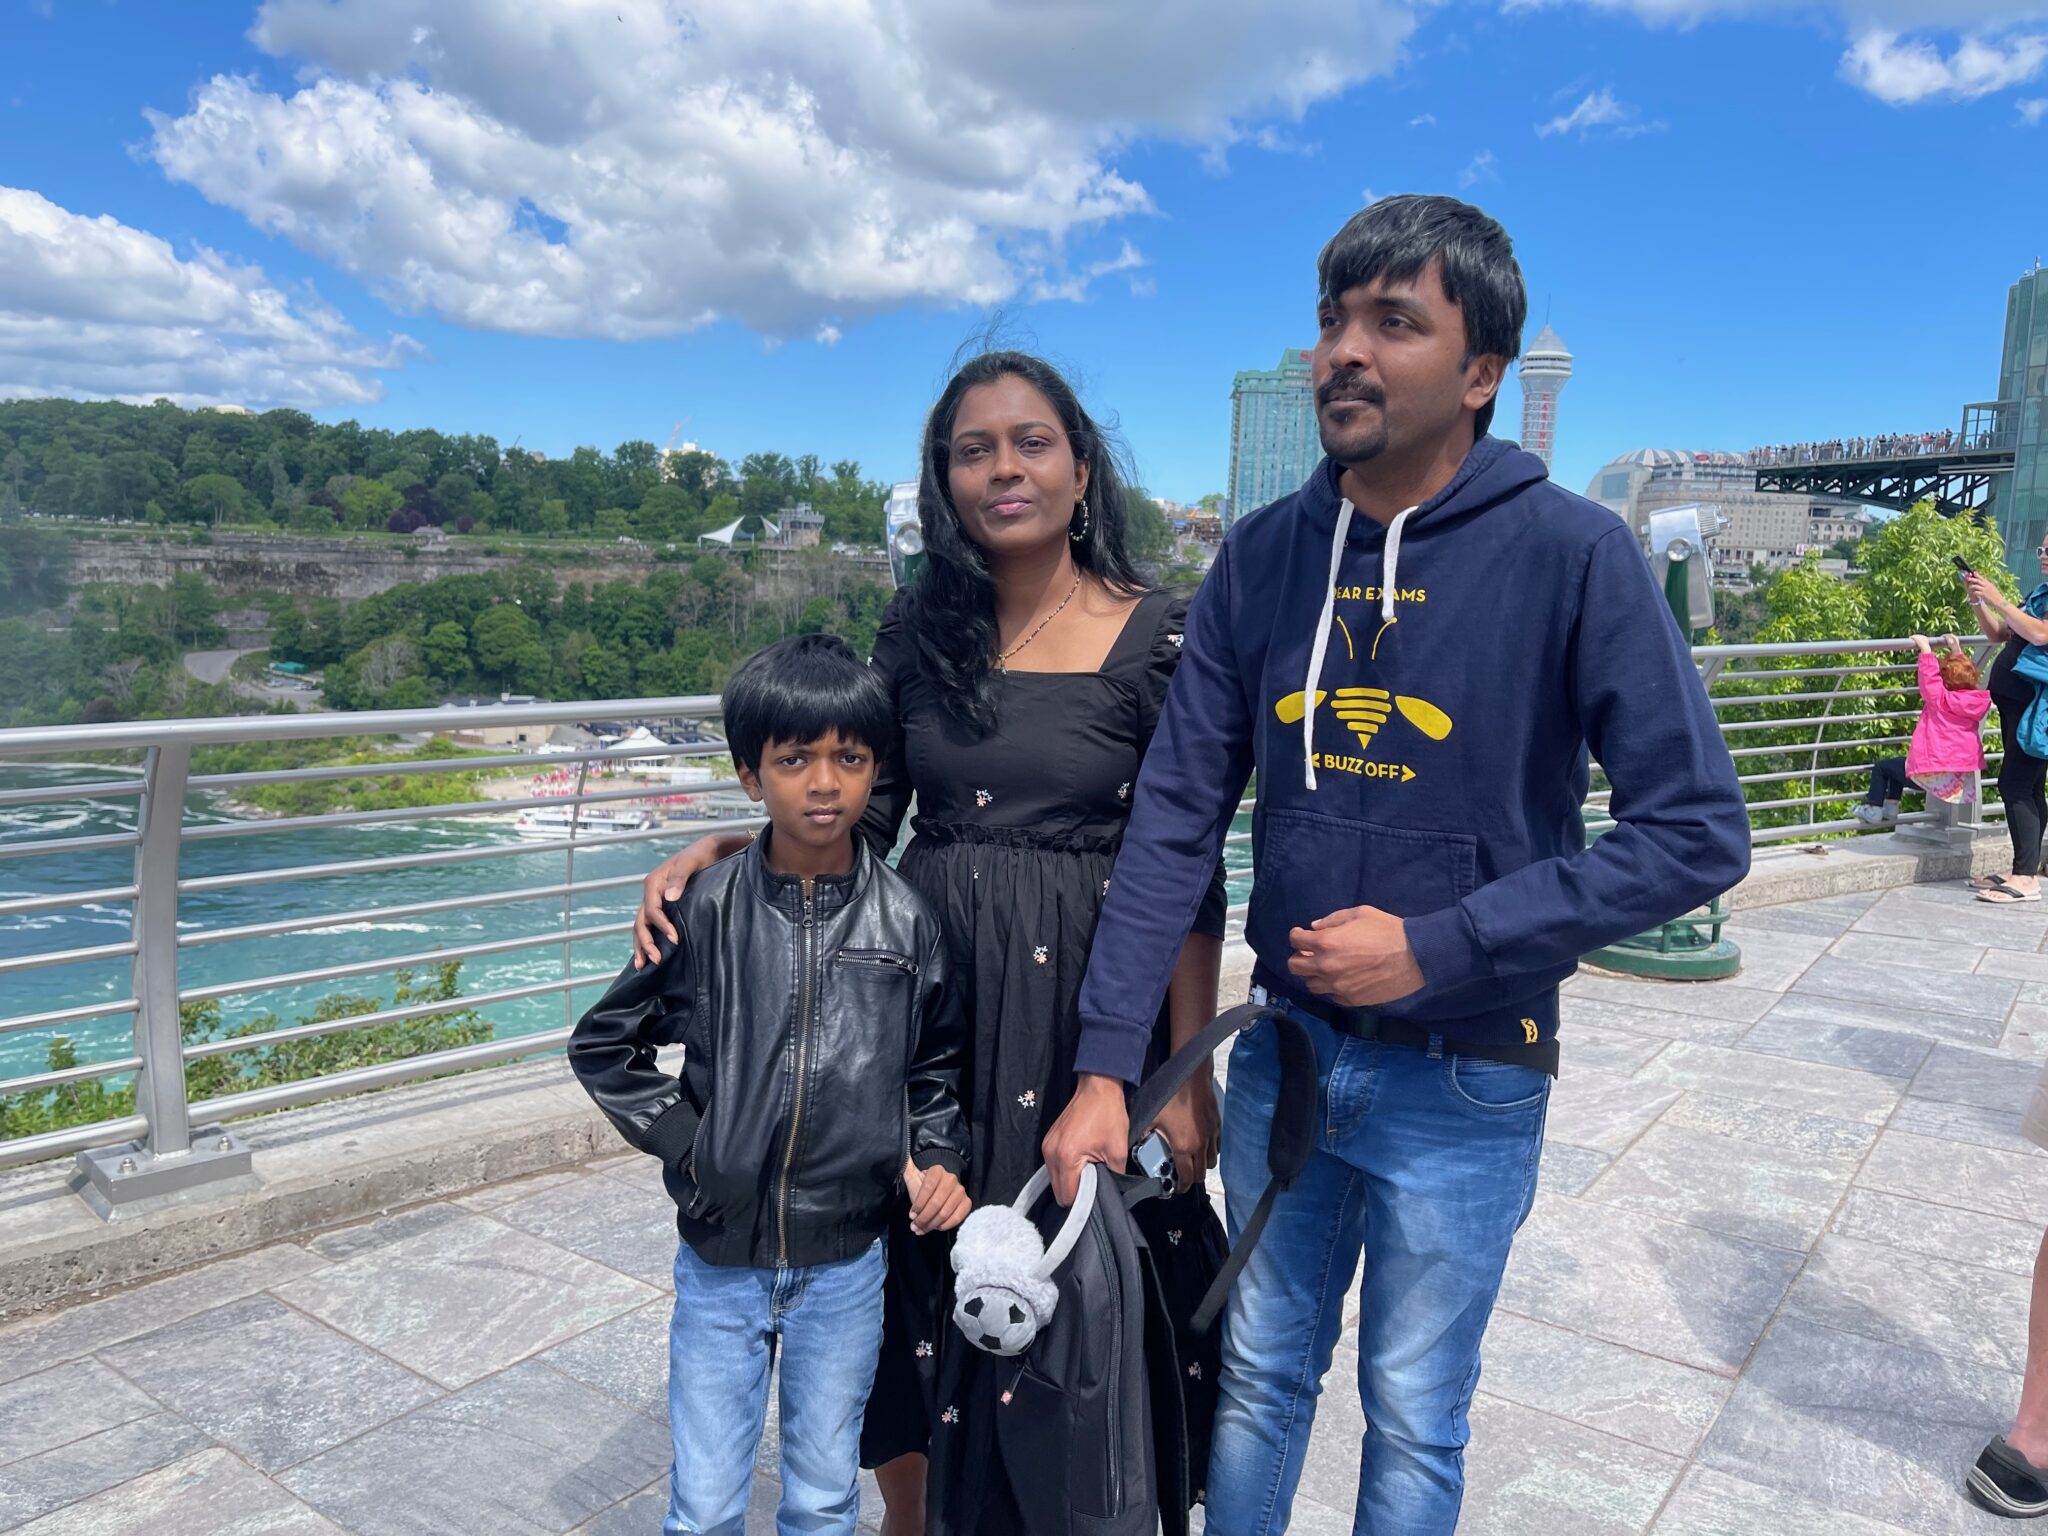 Makam Family at Niagara Falls